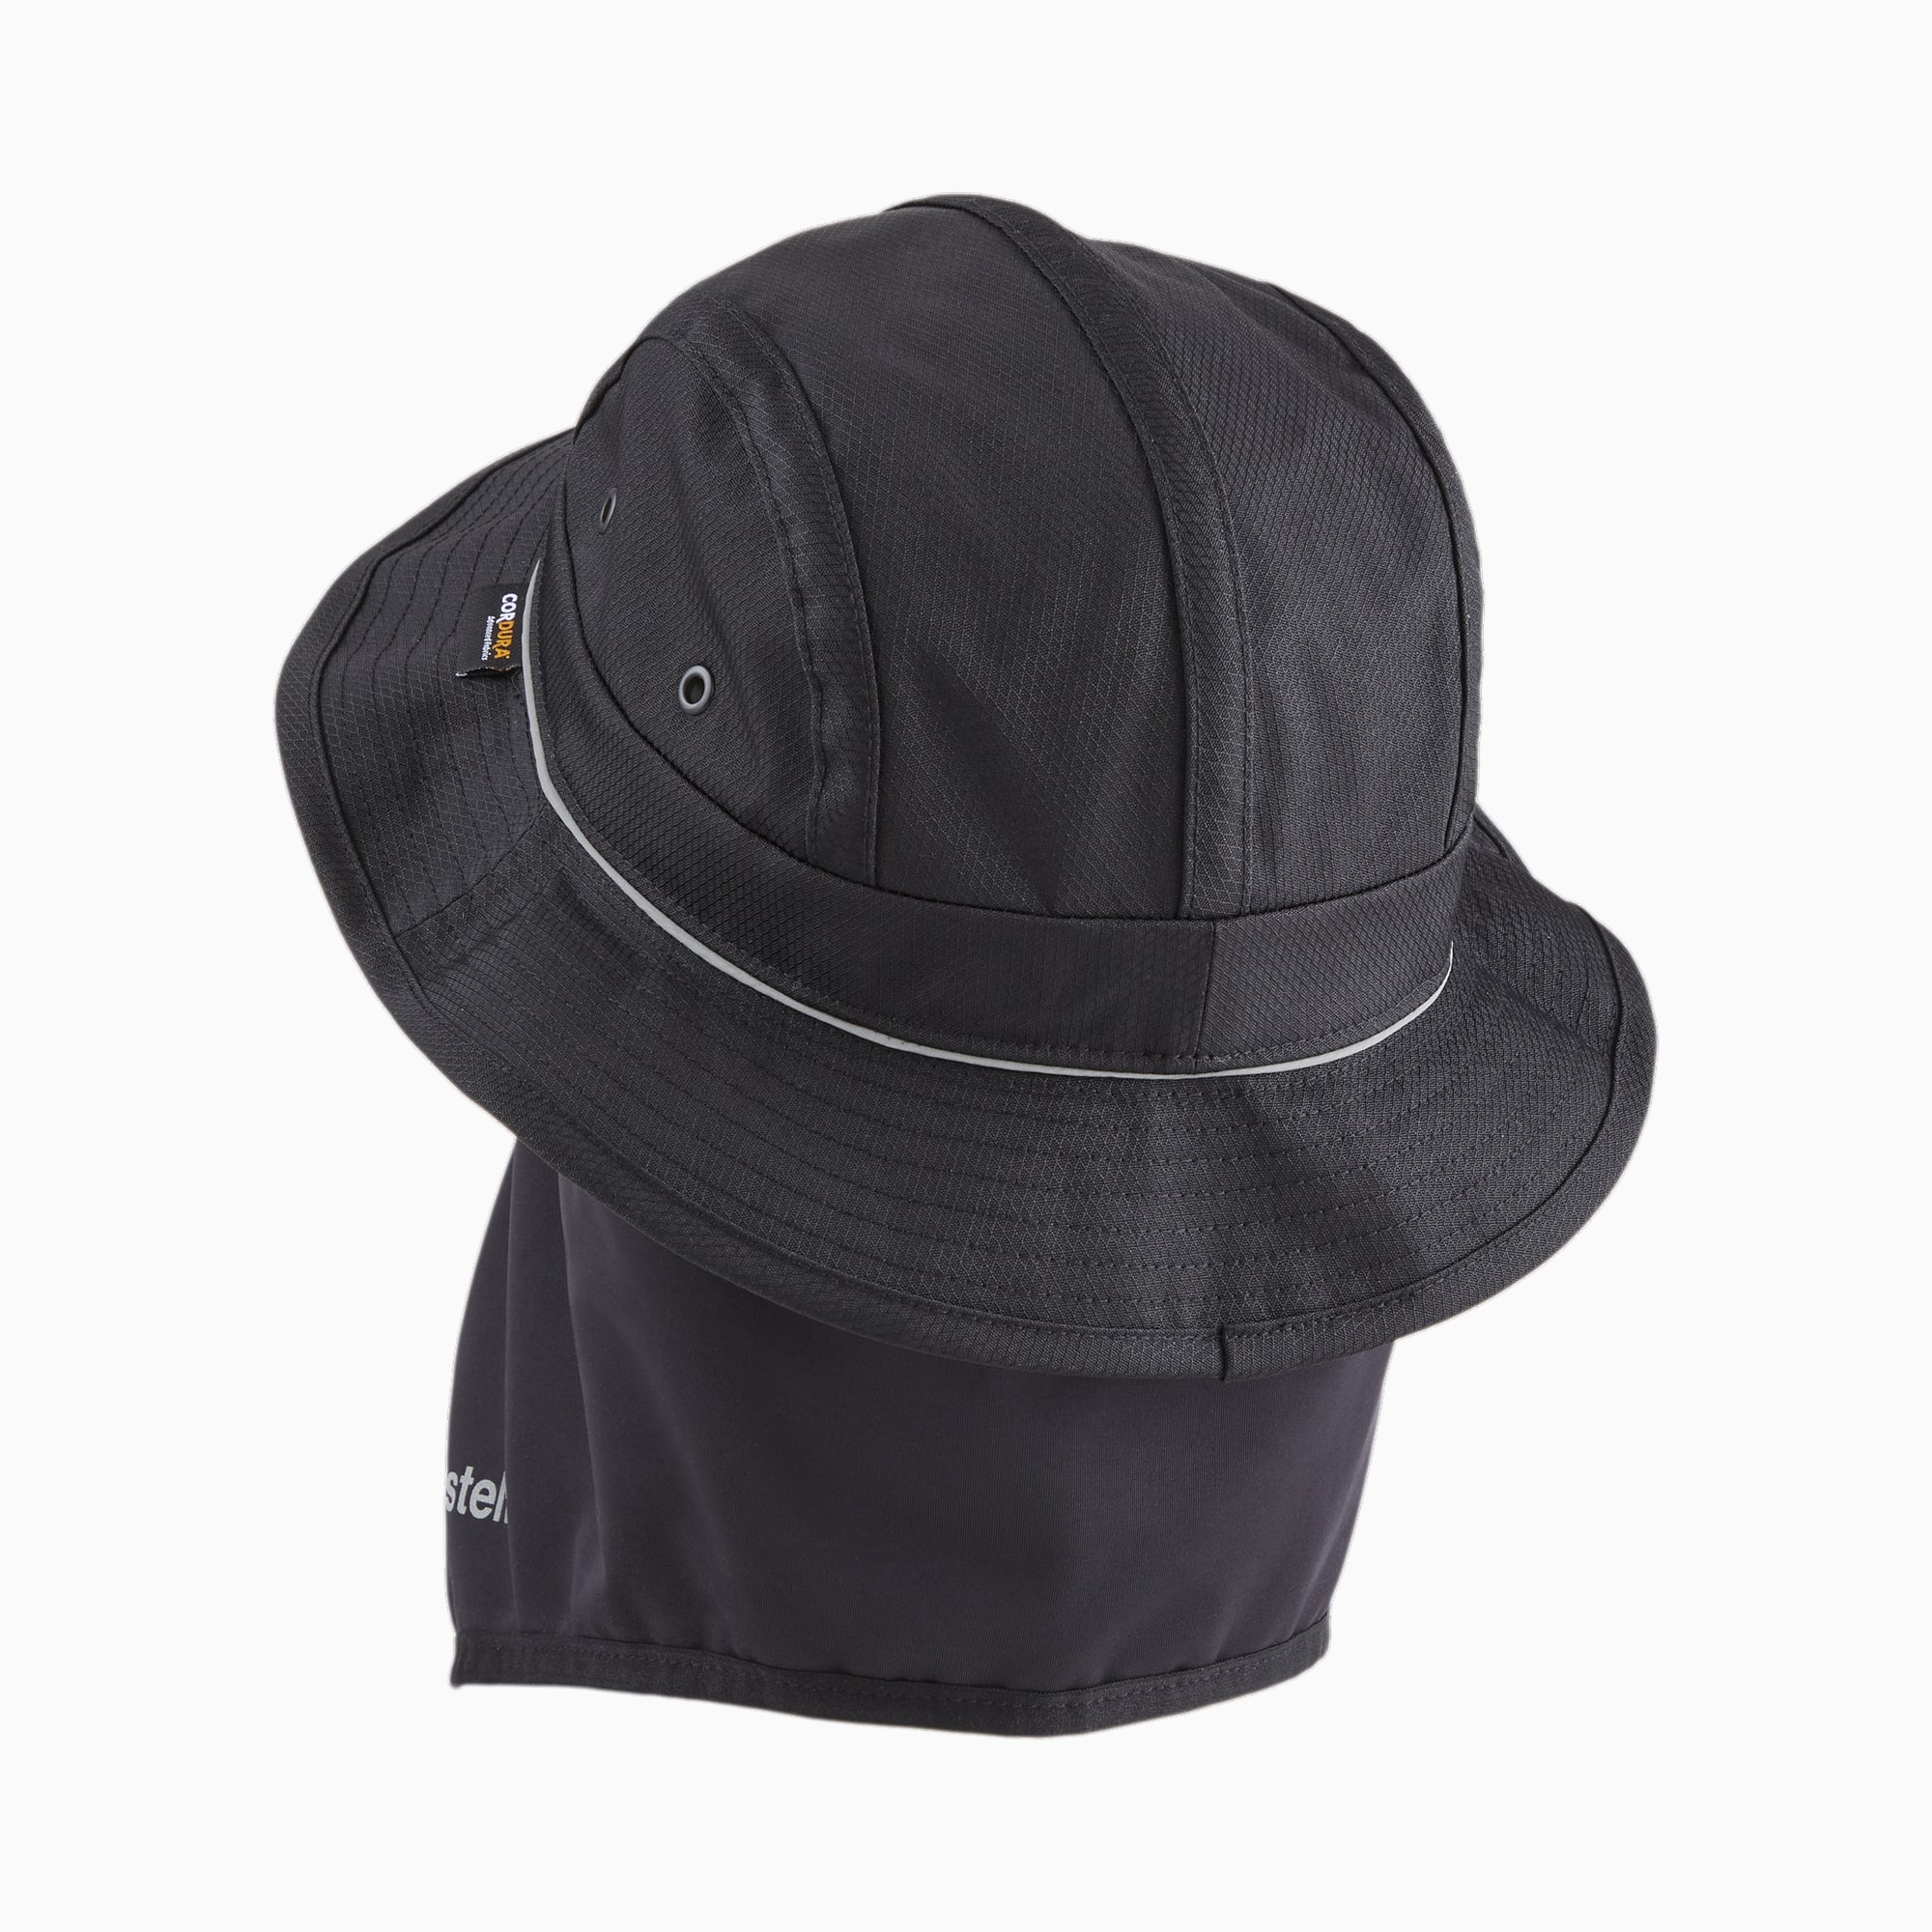 PUMA X PLEASURES Bucket Hat Mit Abnehmbarer Maske, Schwarz, Größe: S/M, Accessoires